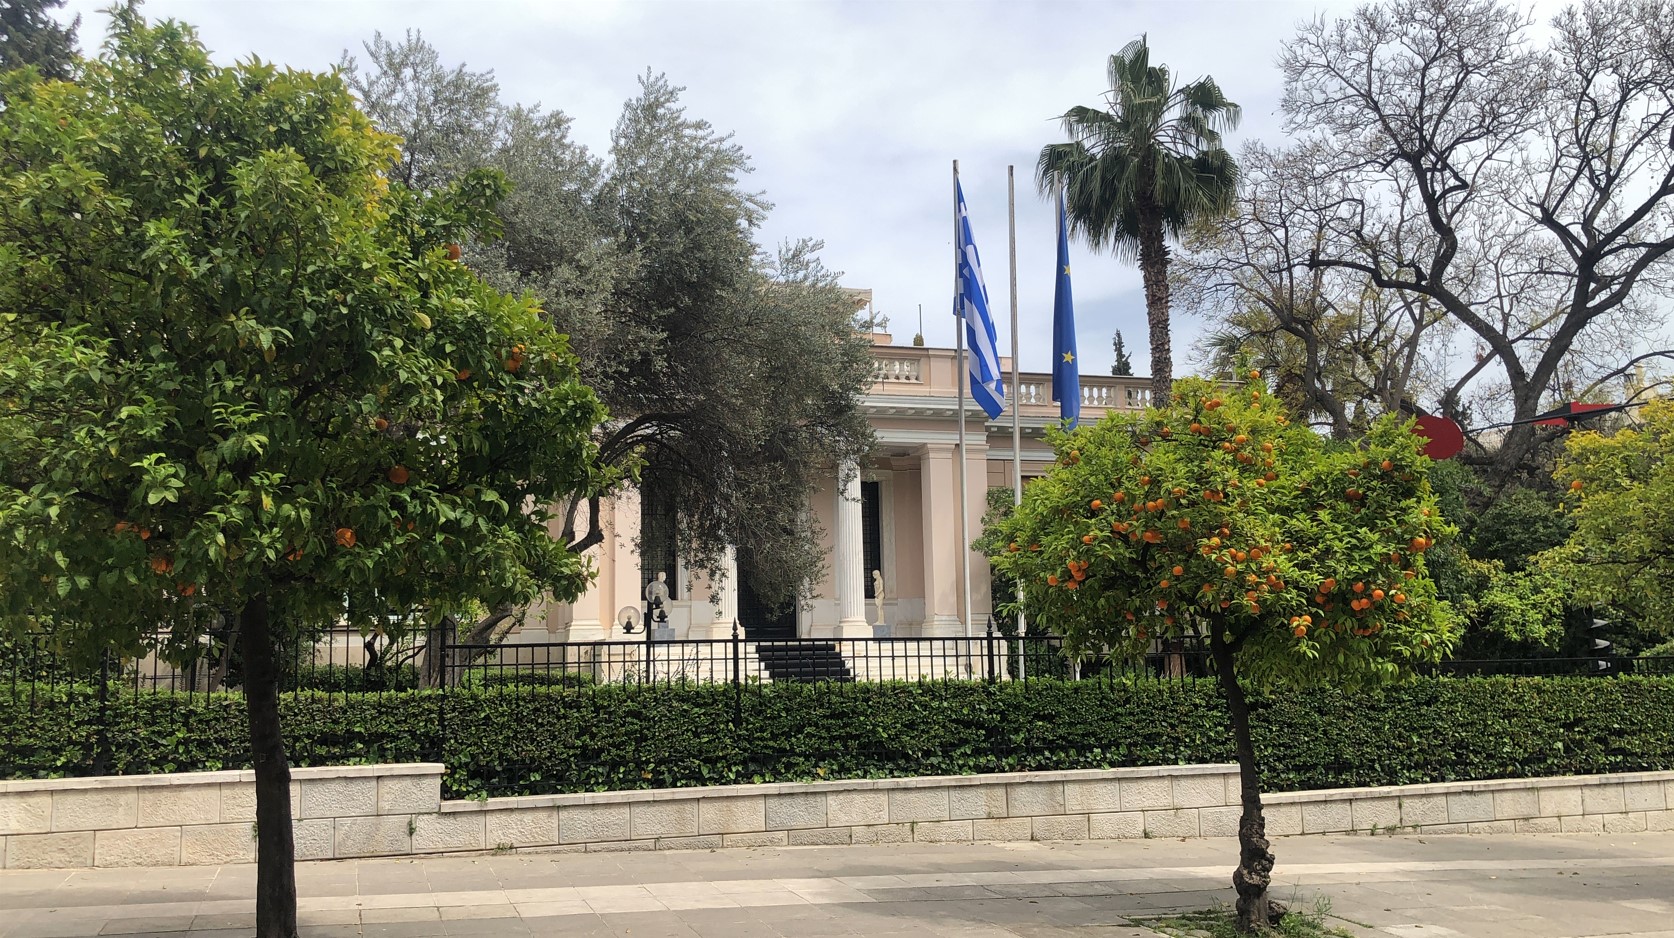 Μεγάλη Παρασκευή, 30 Απριλίου 2021 - Πανδημία COVID-19. Οι Έλληνες φυλακισμένοι μέσα στα σπίτια τους, δεν επιτρέπεται ούτε περιφορά του Επιταφίου να κάνουν. Η κυβέρνηση Μητσοτάκη «παραλείπει» να επαίρει την ελληνική σημαία μεσίστια. Γι' αυτήν είναι απλά... Παρασκευή. Το ίδιο συμβαίνει και στο Μέγαρο του Υπουργείου Εξωτερικών, του «υπερπατριώτη» Νίκου Δένδια.